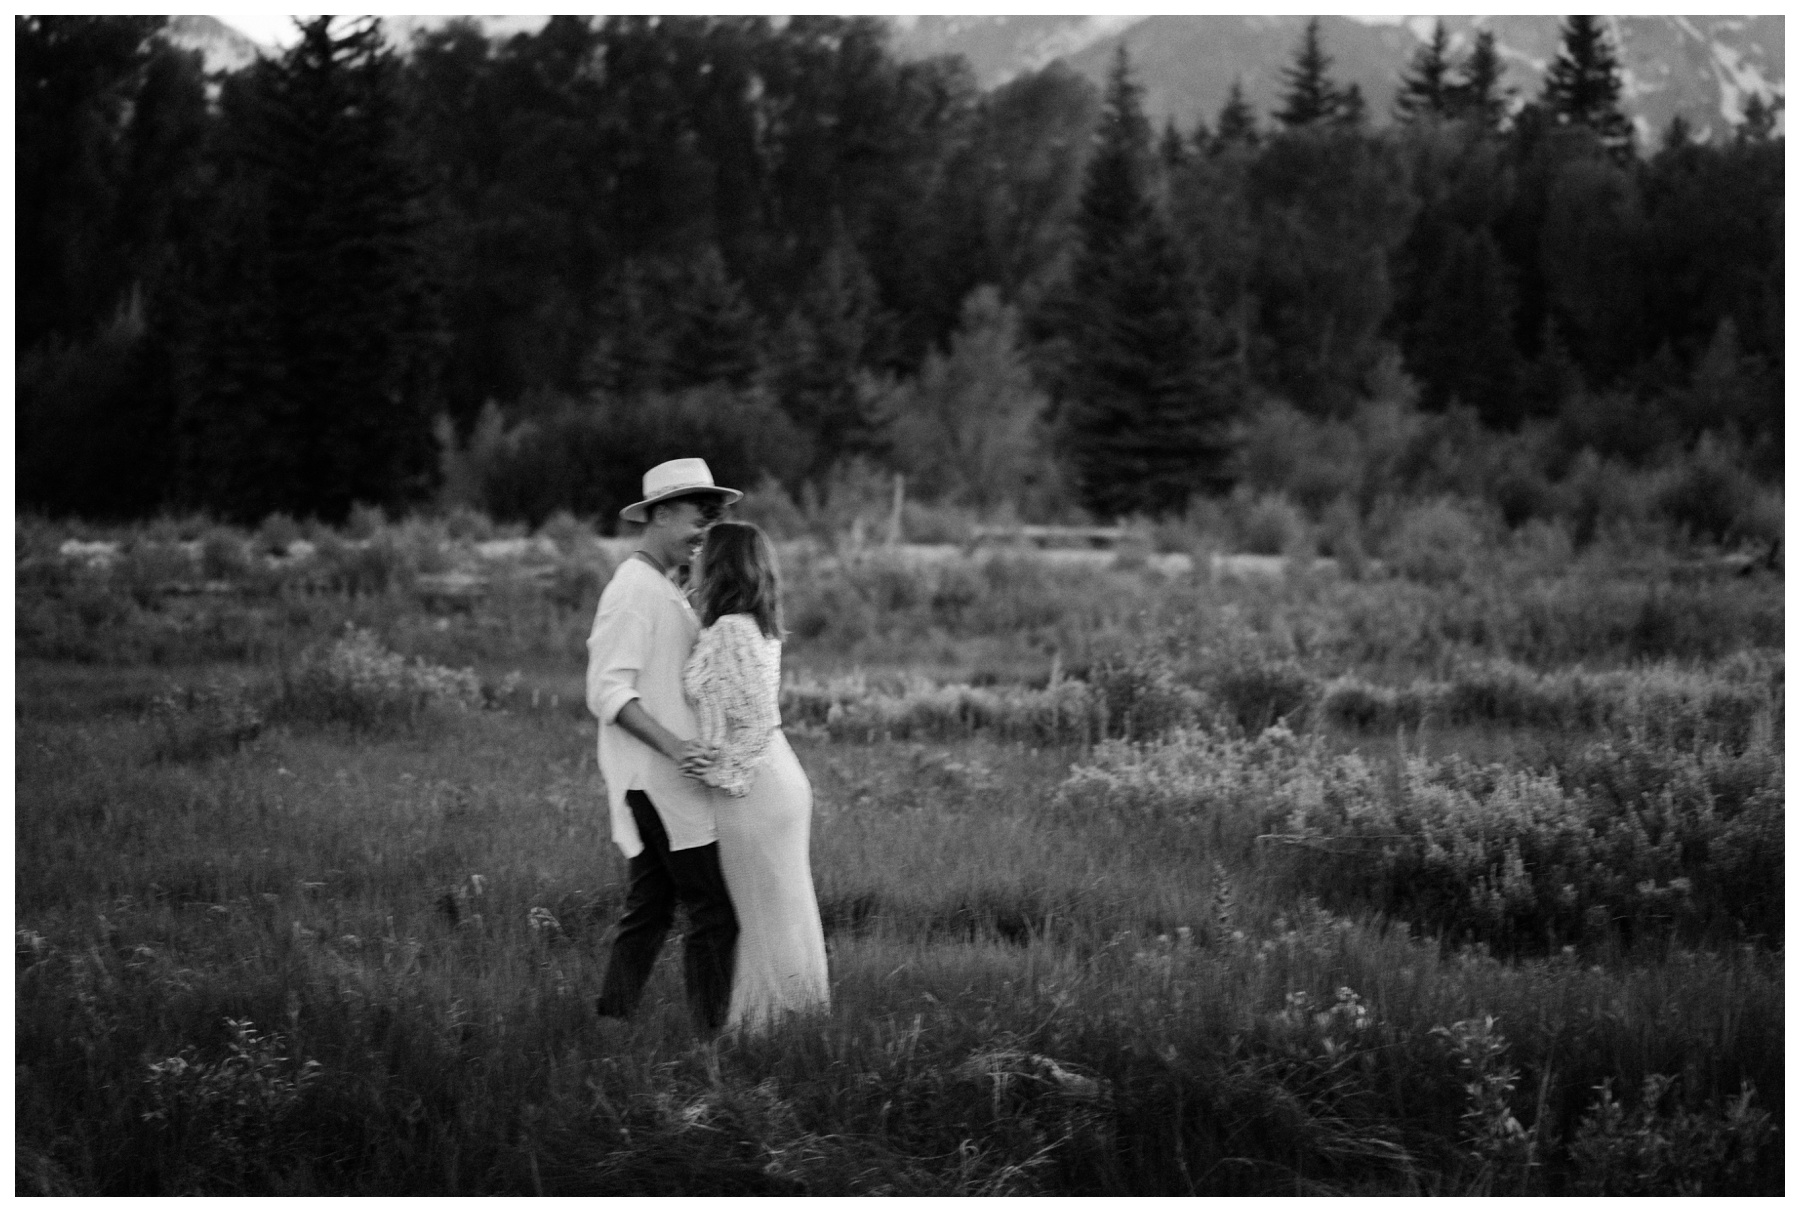 Jackson Hole Elopement, Teton Mountains Elopement, Boho Elopement Photographer, Winnipeg Wedding & Elopement Photographer, Vanessa Renae Photography, Canadian Elopement Photographer